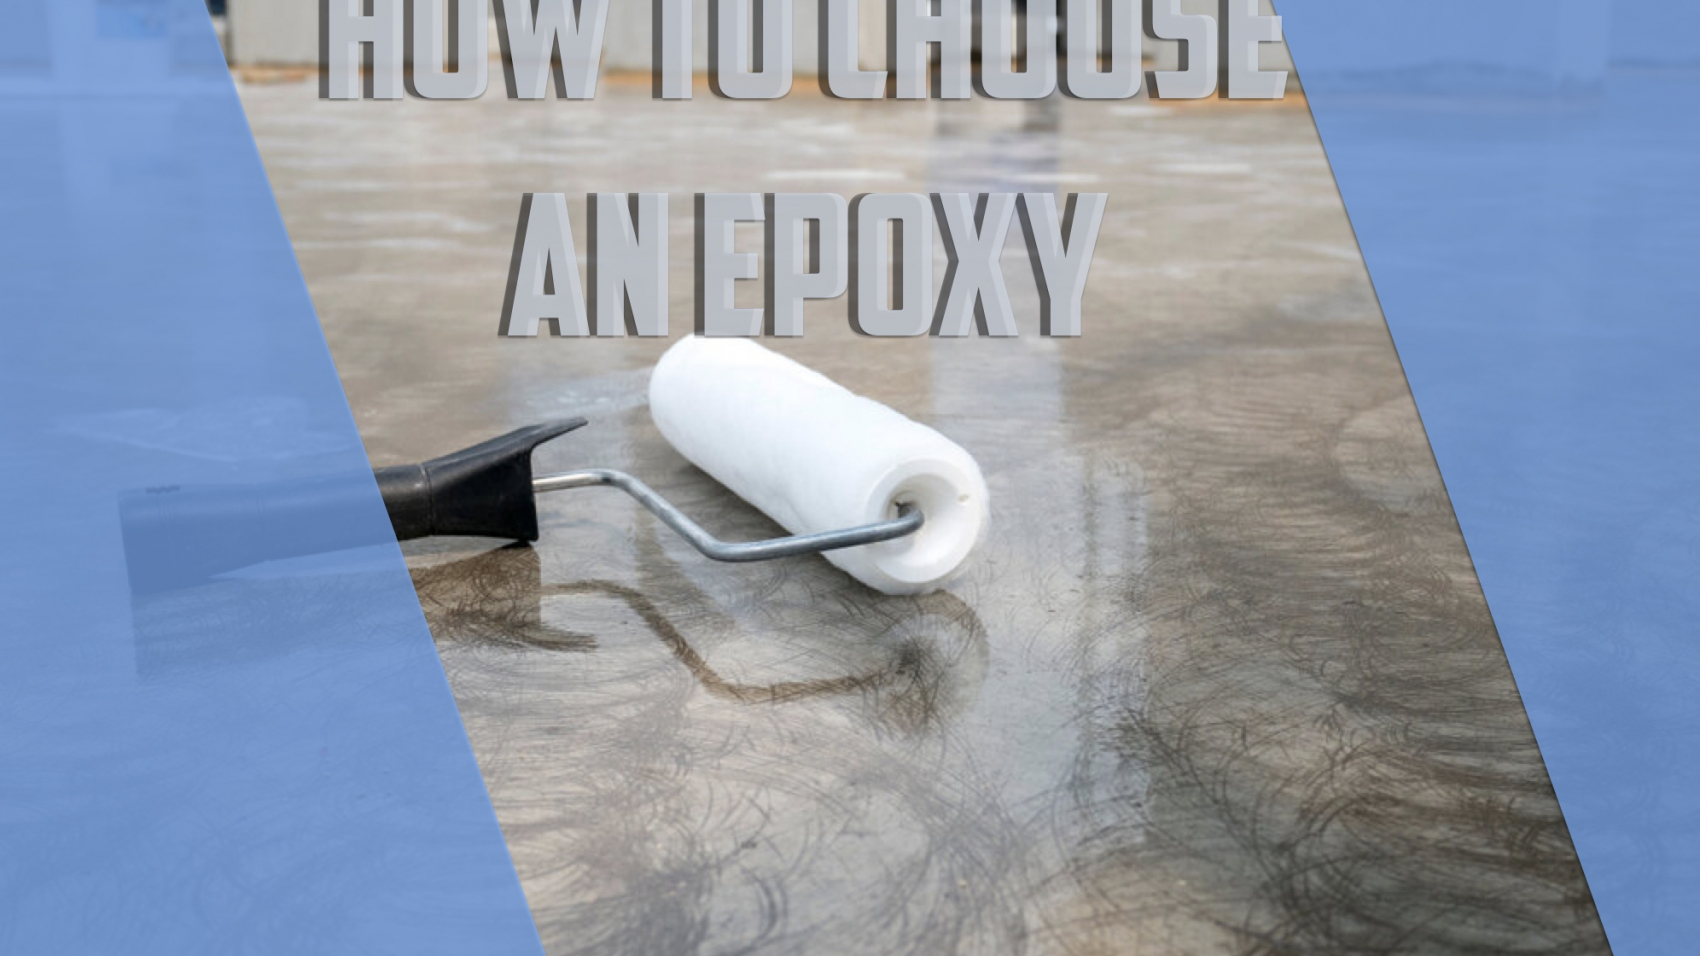 choose an epoxxy